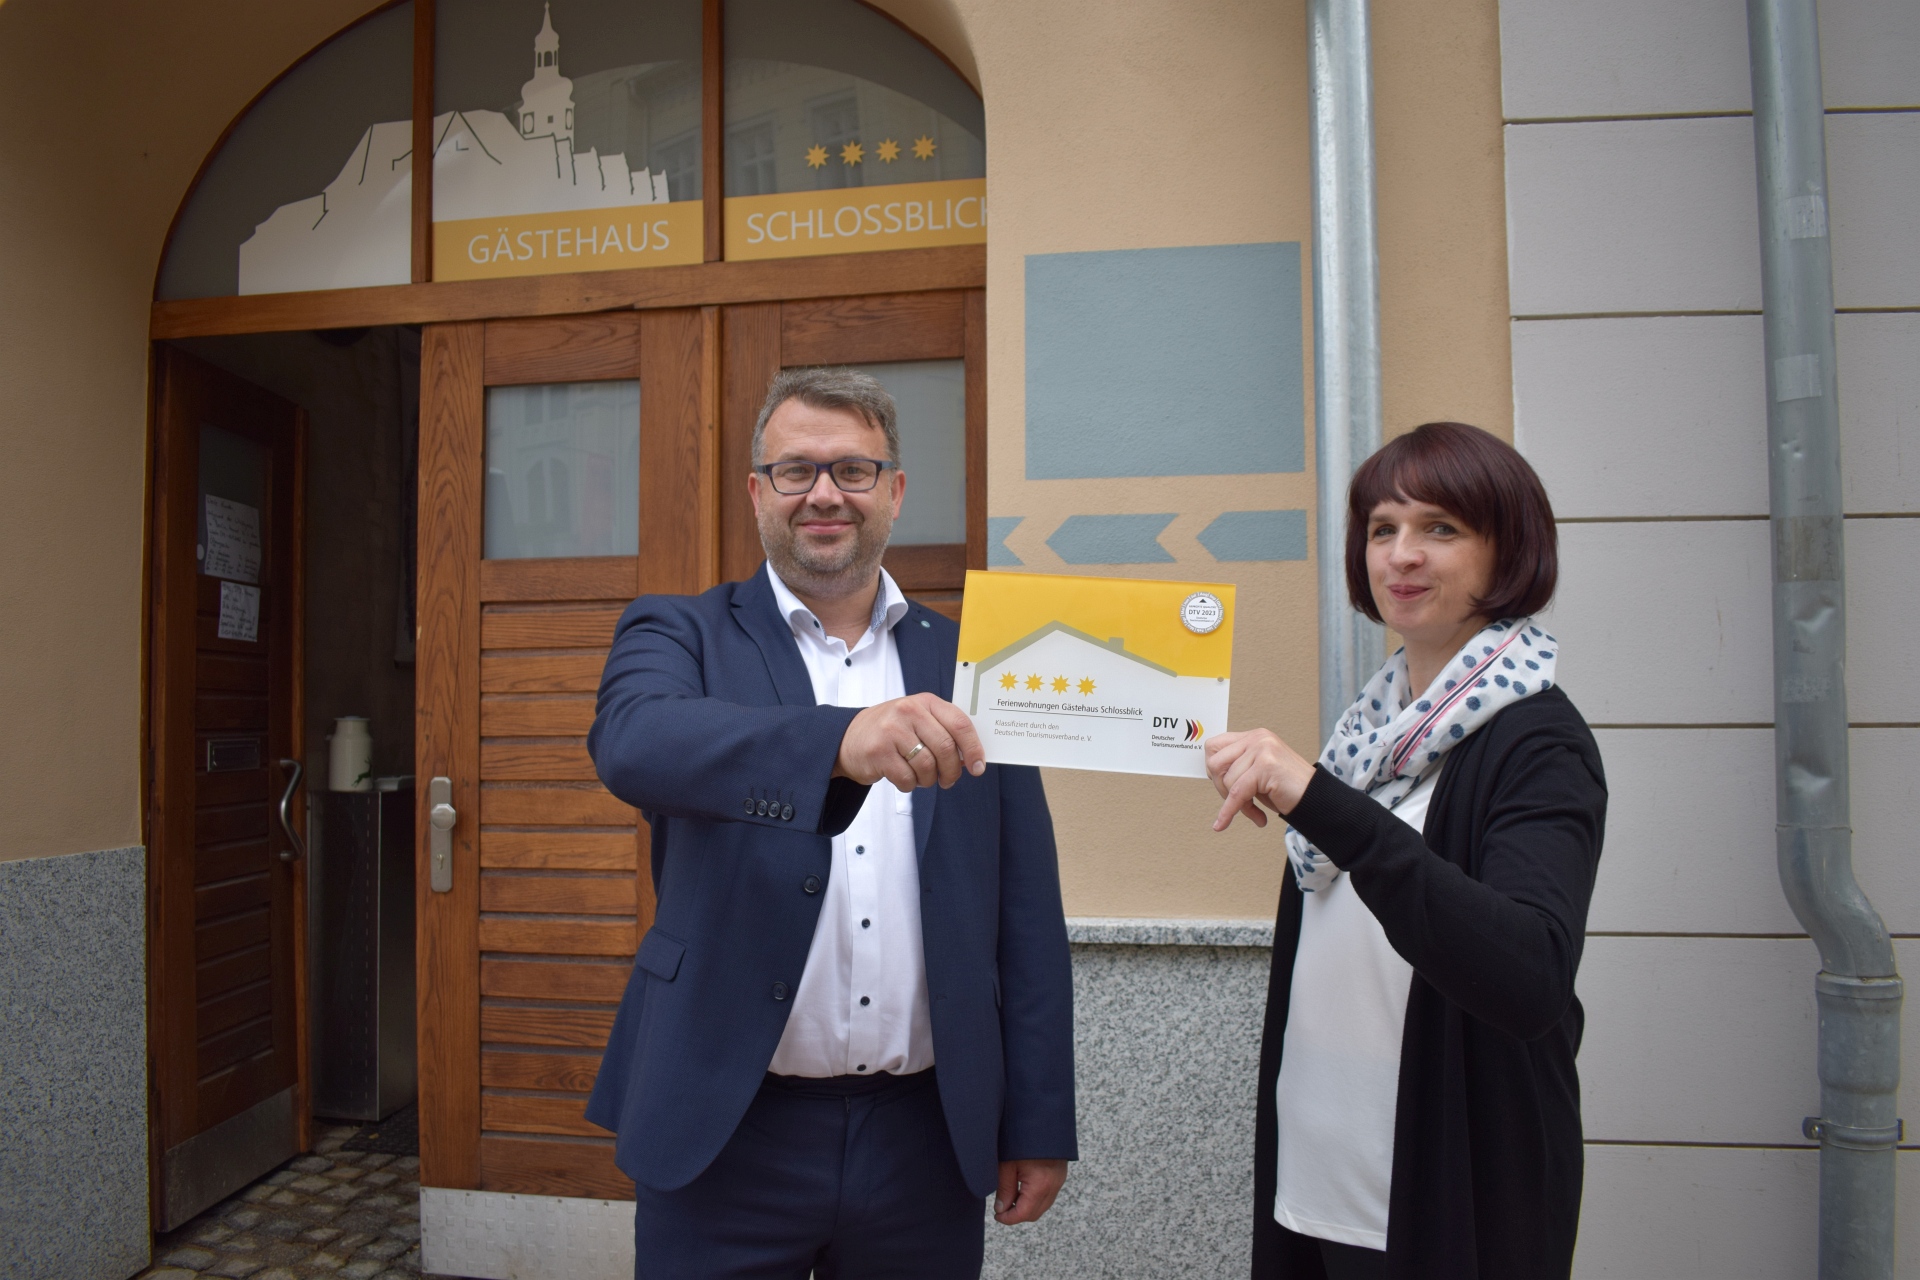 Neues Gästehaus in Greiz mit 4 Sternen ausgezeichnet